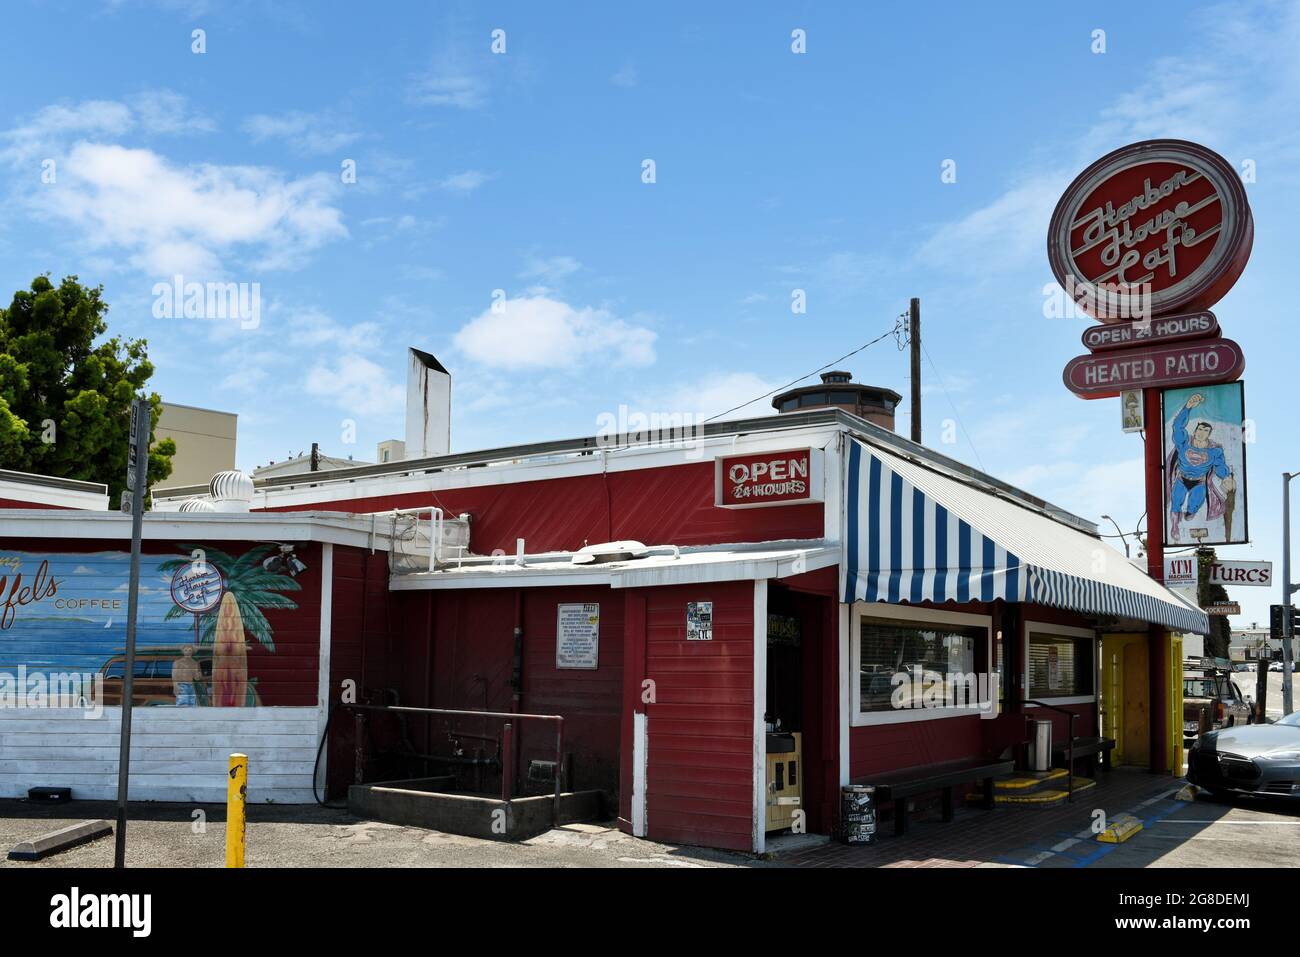 SUNSET BEACH, KALIFORNIEN - 16 JUL 2021: Das Harbour House Cafe am Pacific Coast Highway ist seit 1939 ein beliebtes Lokal. Stockfoto